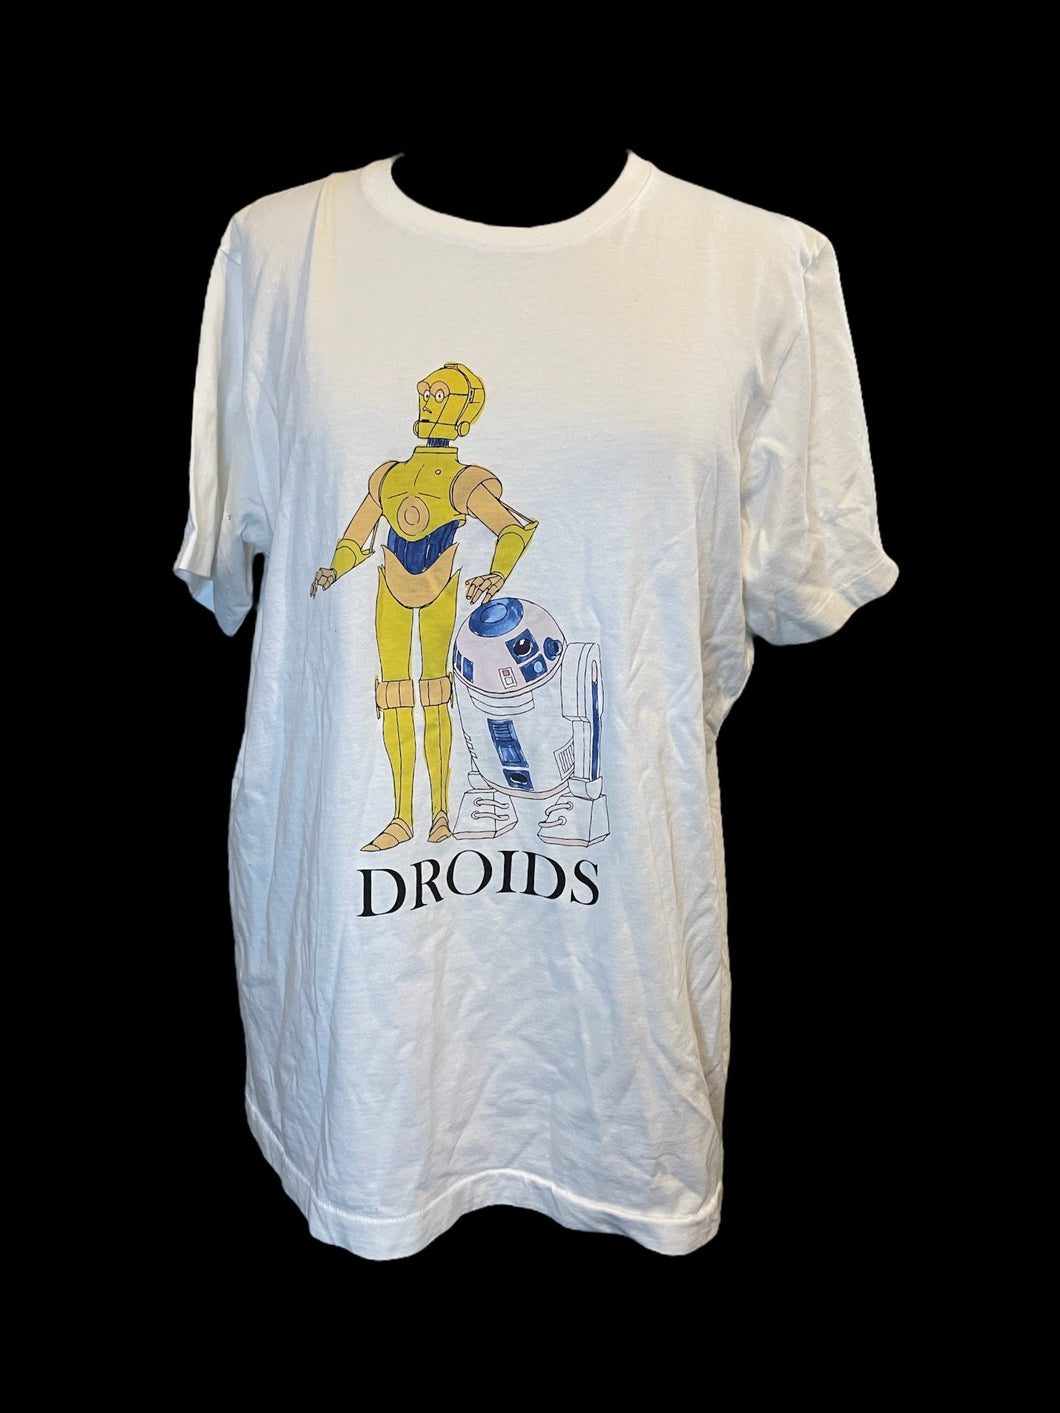 XL White, black, blue, & yellow cotton C-3PO & R2-D2 graphic short sleeve crew neckline top w/ “Droids” text